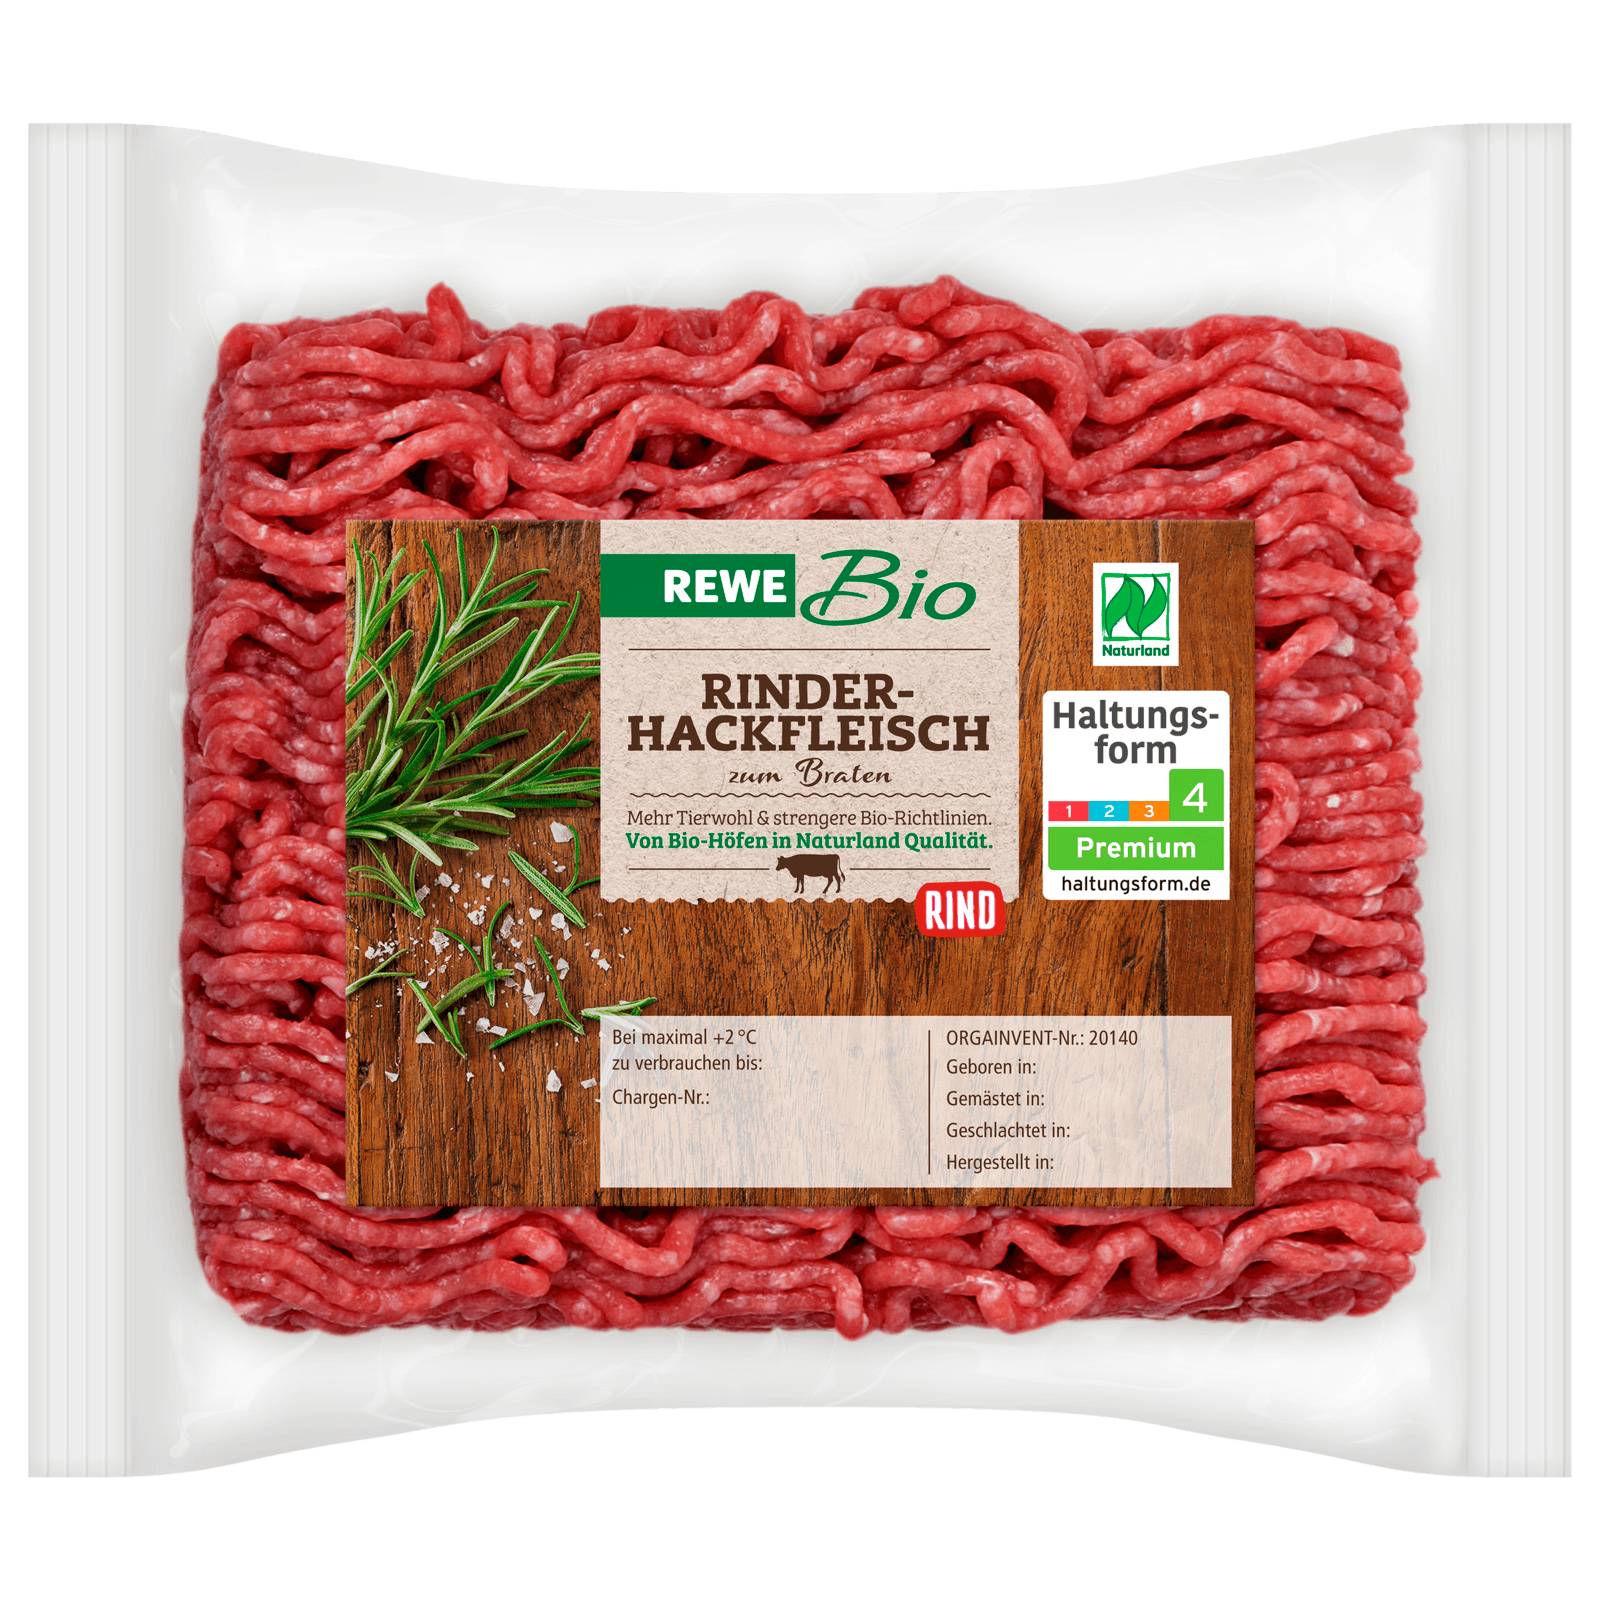 REWE Bio Rinderhackfleisch 250g